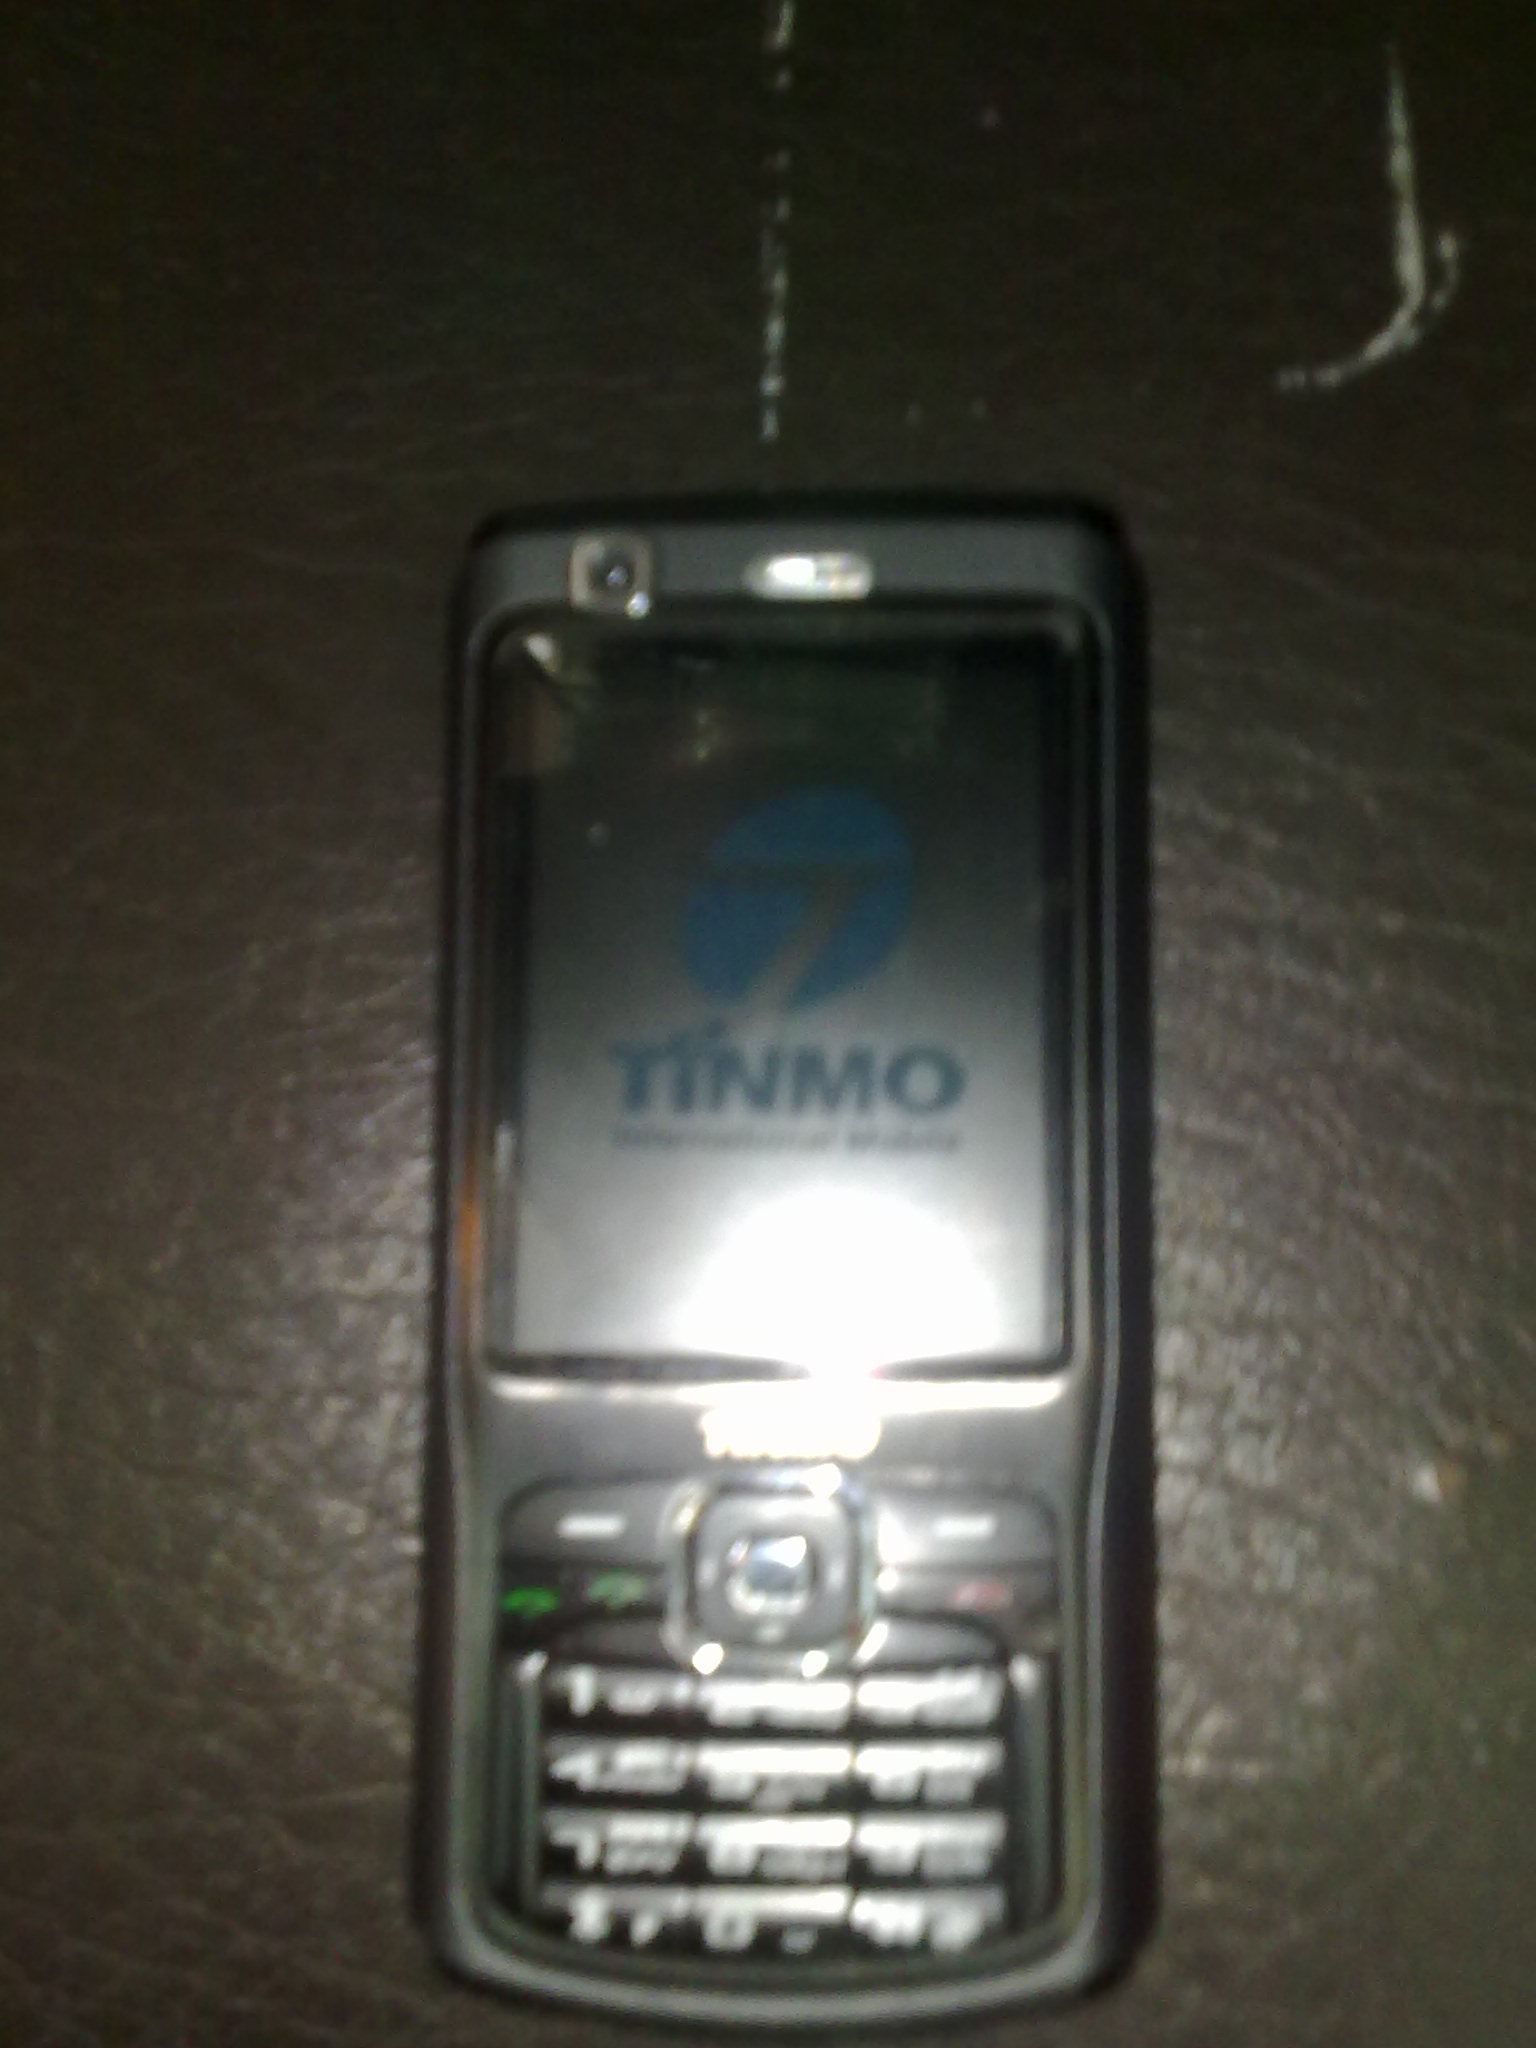   N70 F900 TINMO   16